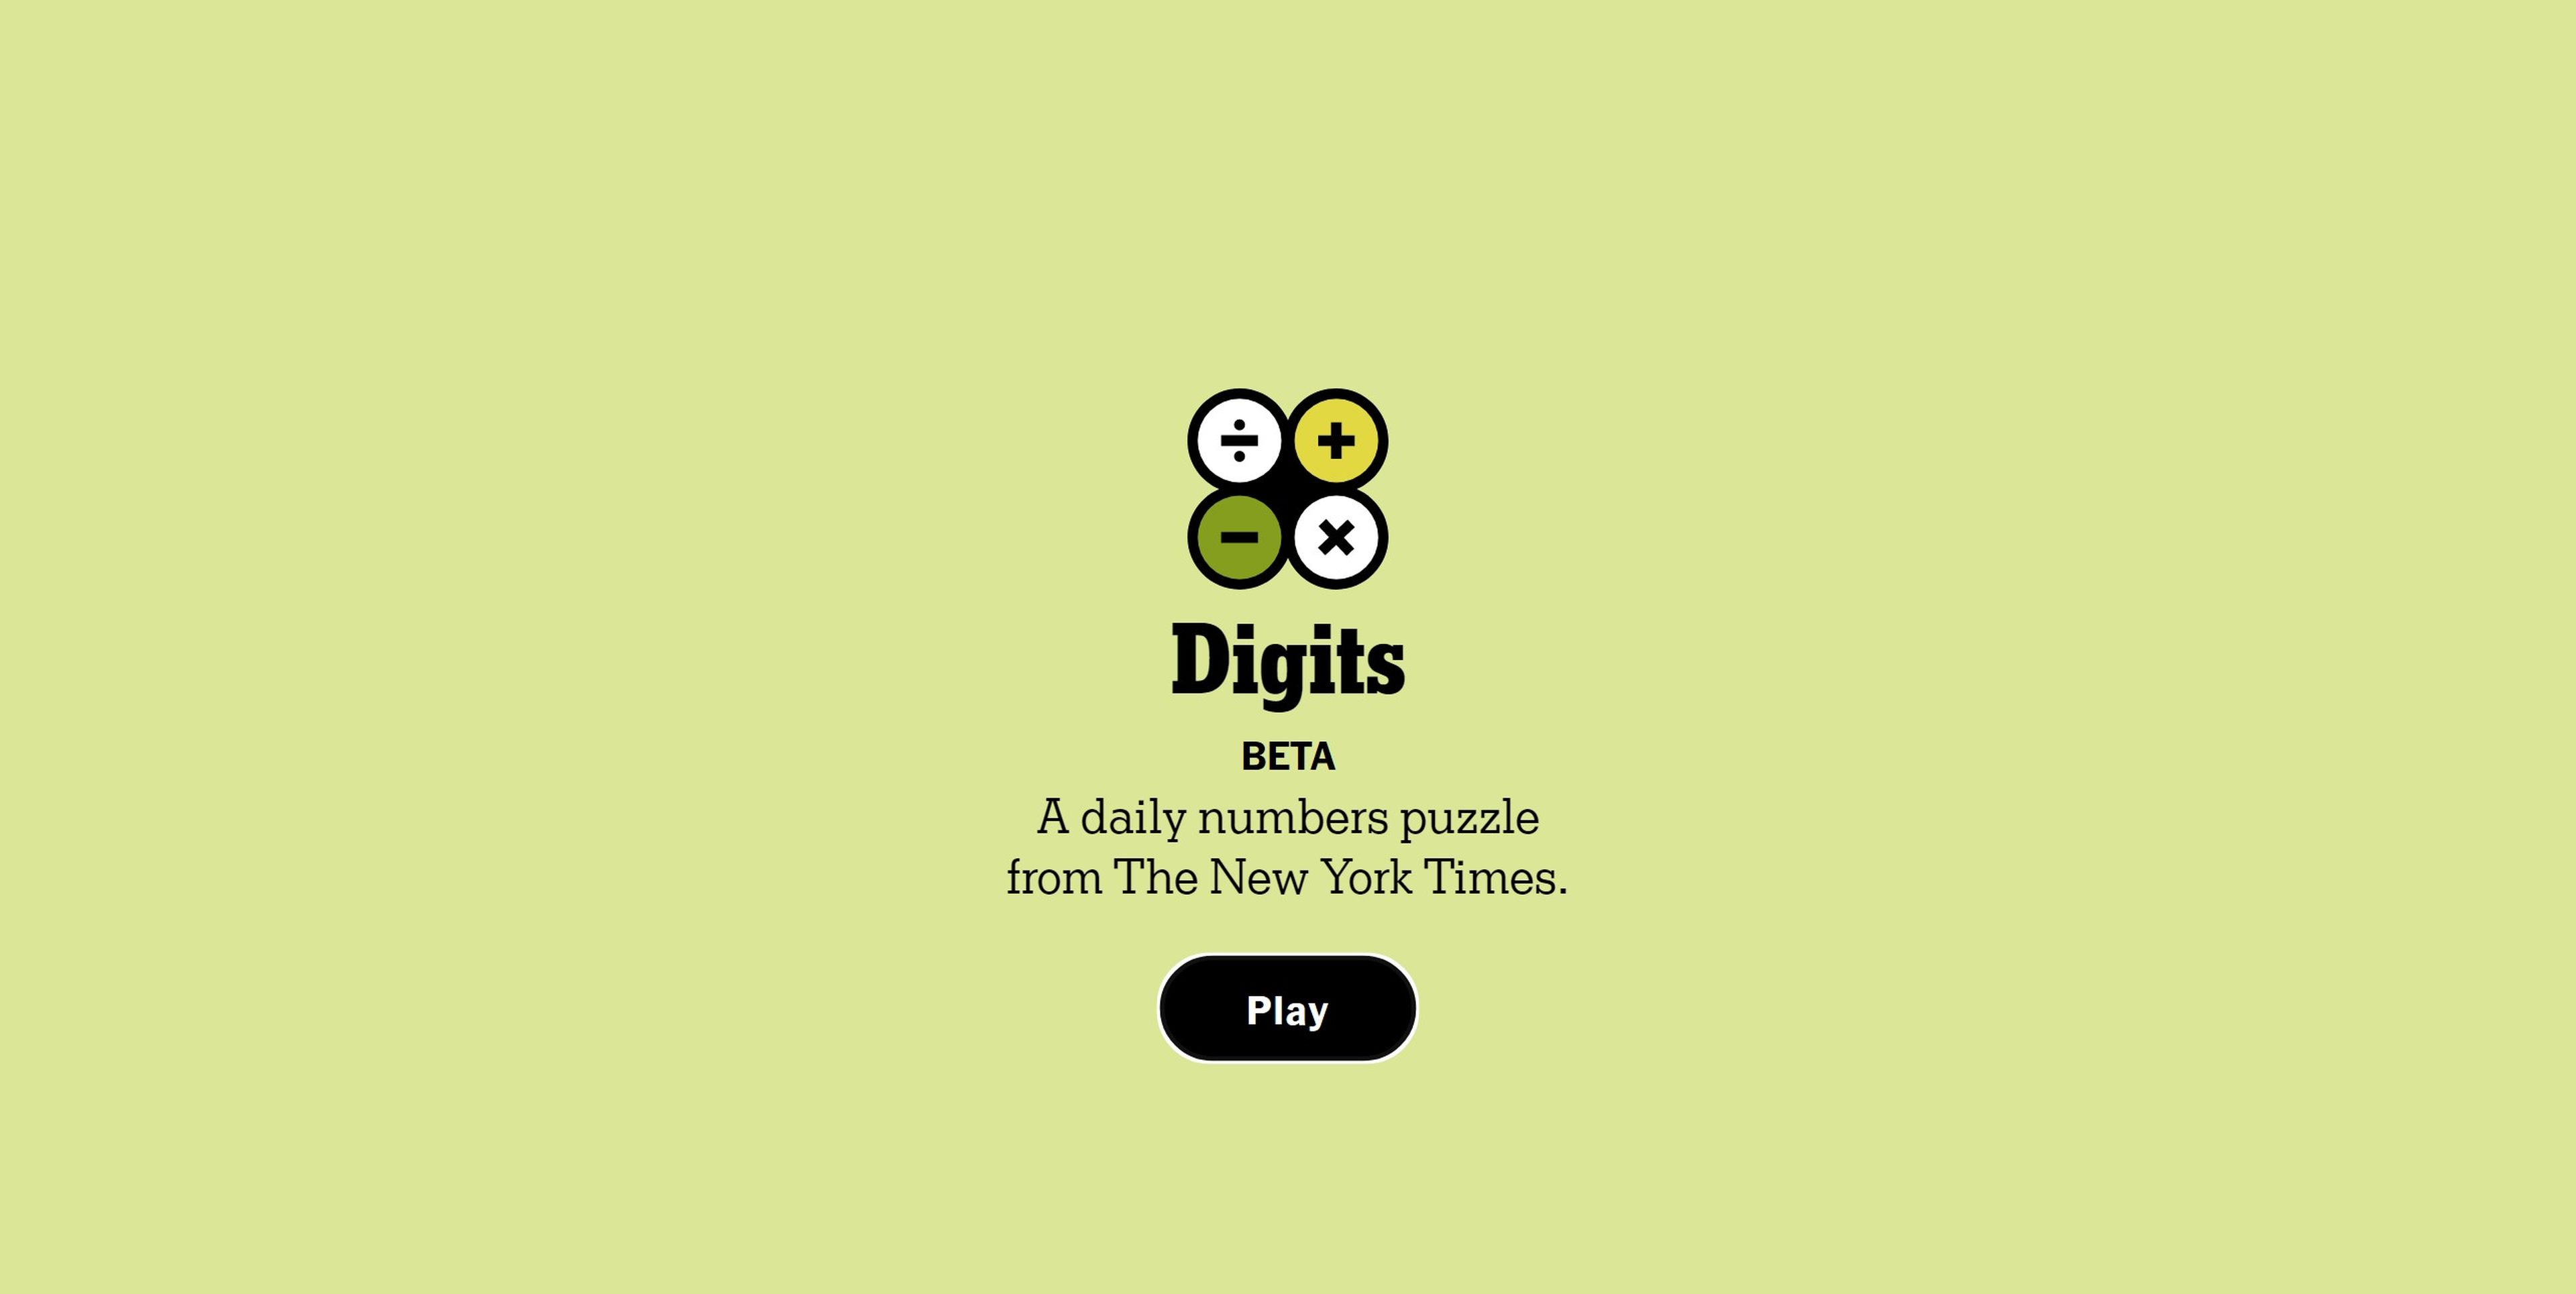 ¿Aburrido de Wordle? NYT lanza Digits su nuevo juego diario, ahora con números, tremendamente adictivo